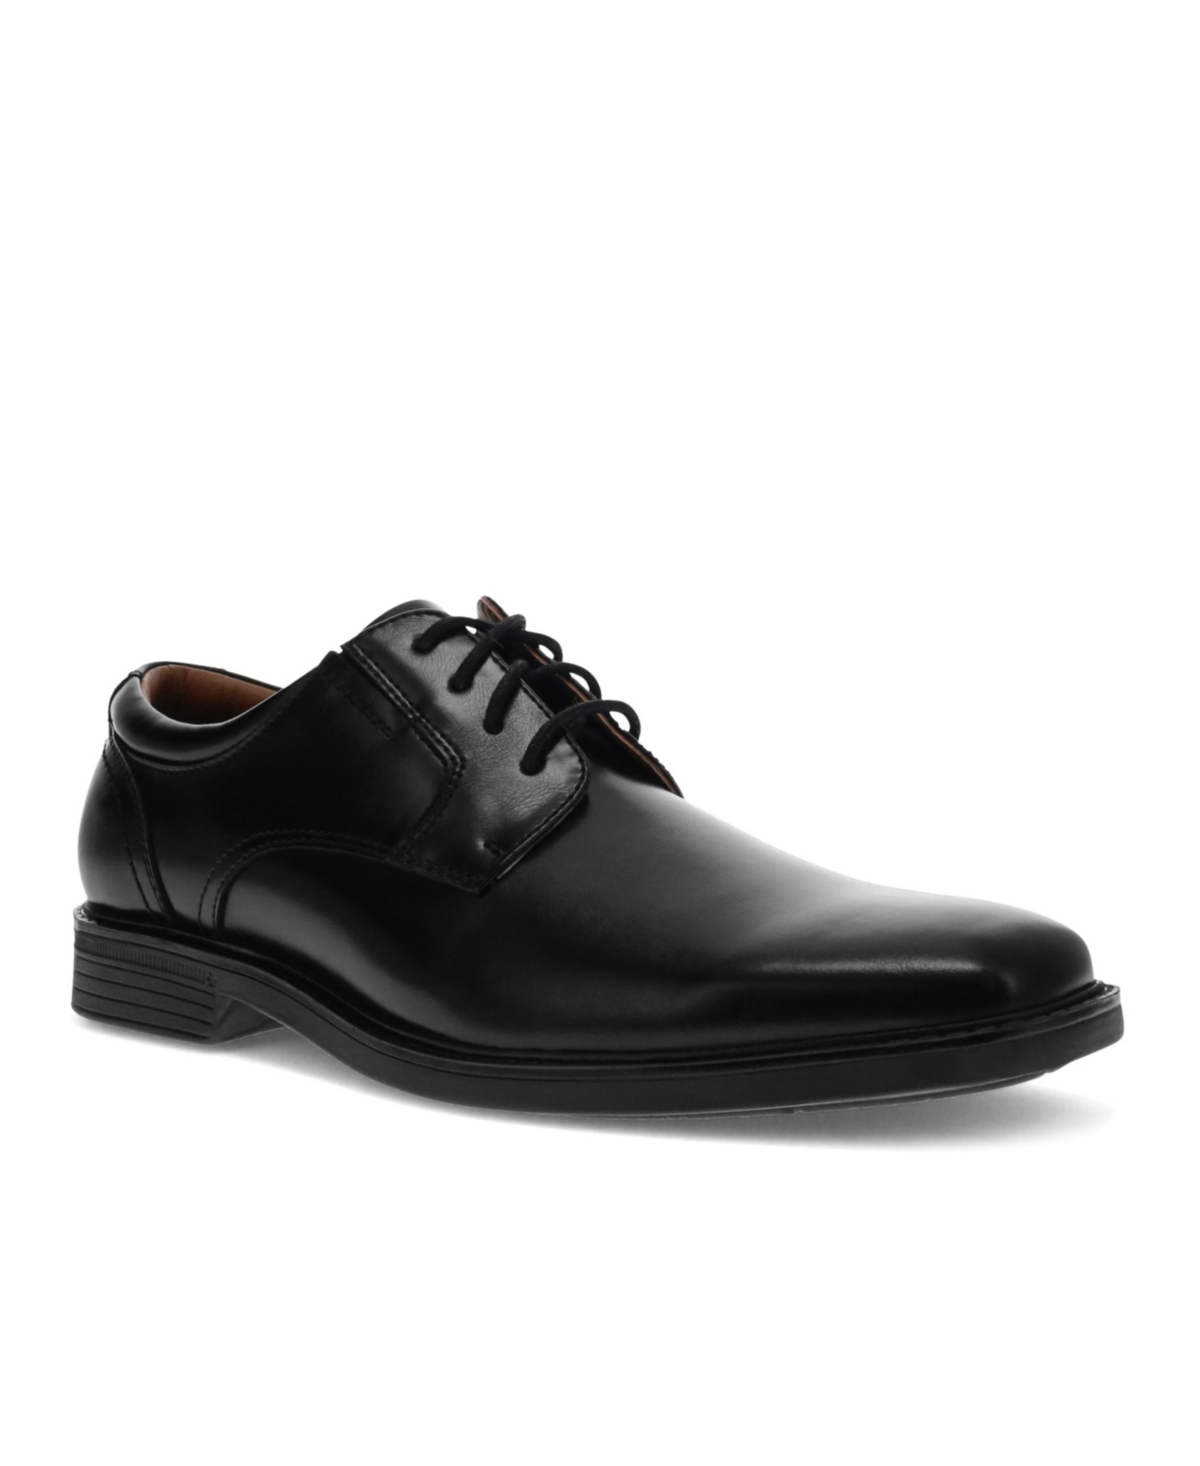 Dockers Men's Stiles Oxford Dress Shoes Men's Shoes